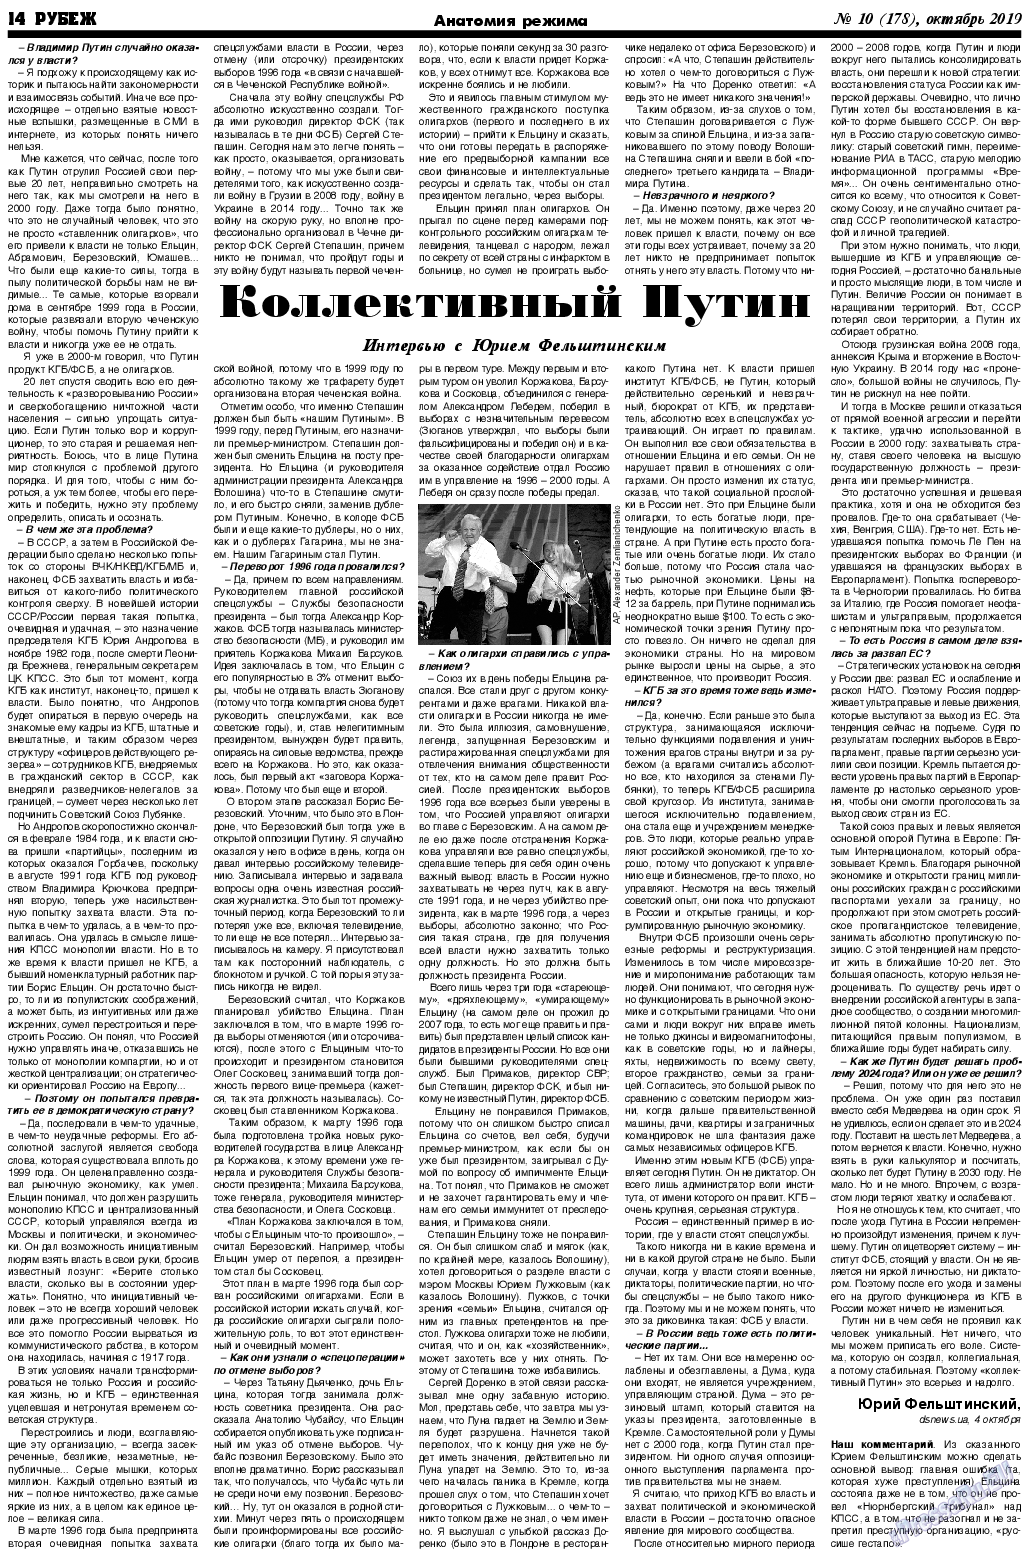 Рубеж (газета). 2019 год, номер 10, стр. 14